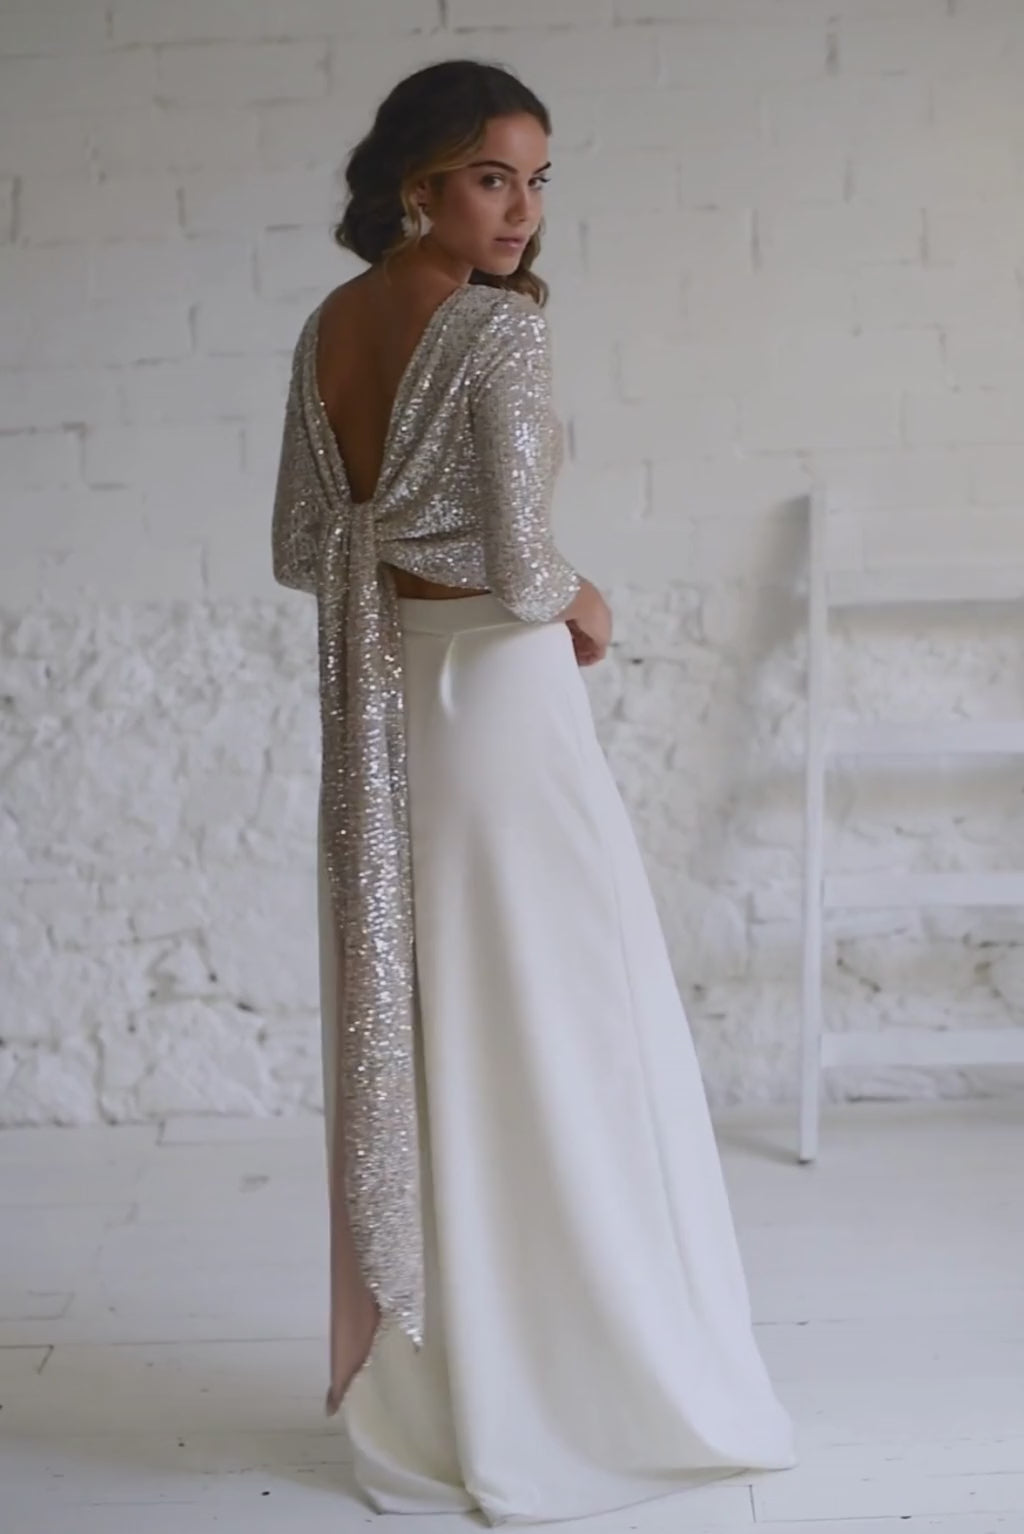 Video de modelo de espaldas con traje de novia dos piezas pantalon palazzo y top de manga larga de lentejuelas plateadas. Podemos observar la preciosa espalda abierta.